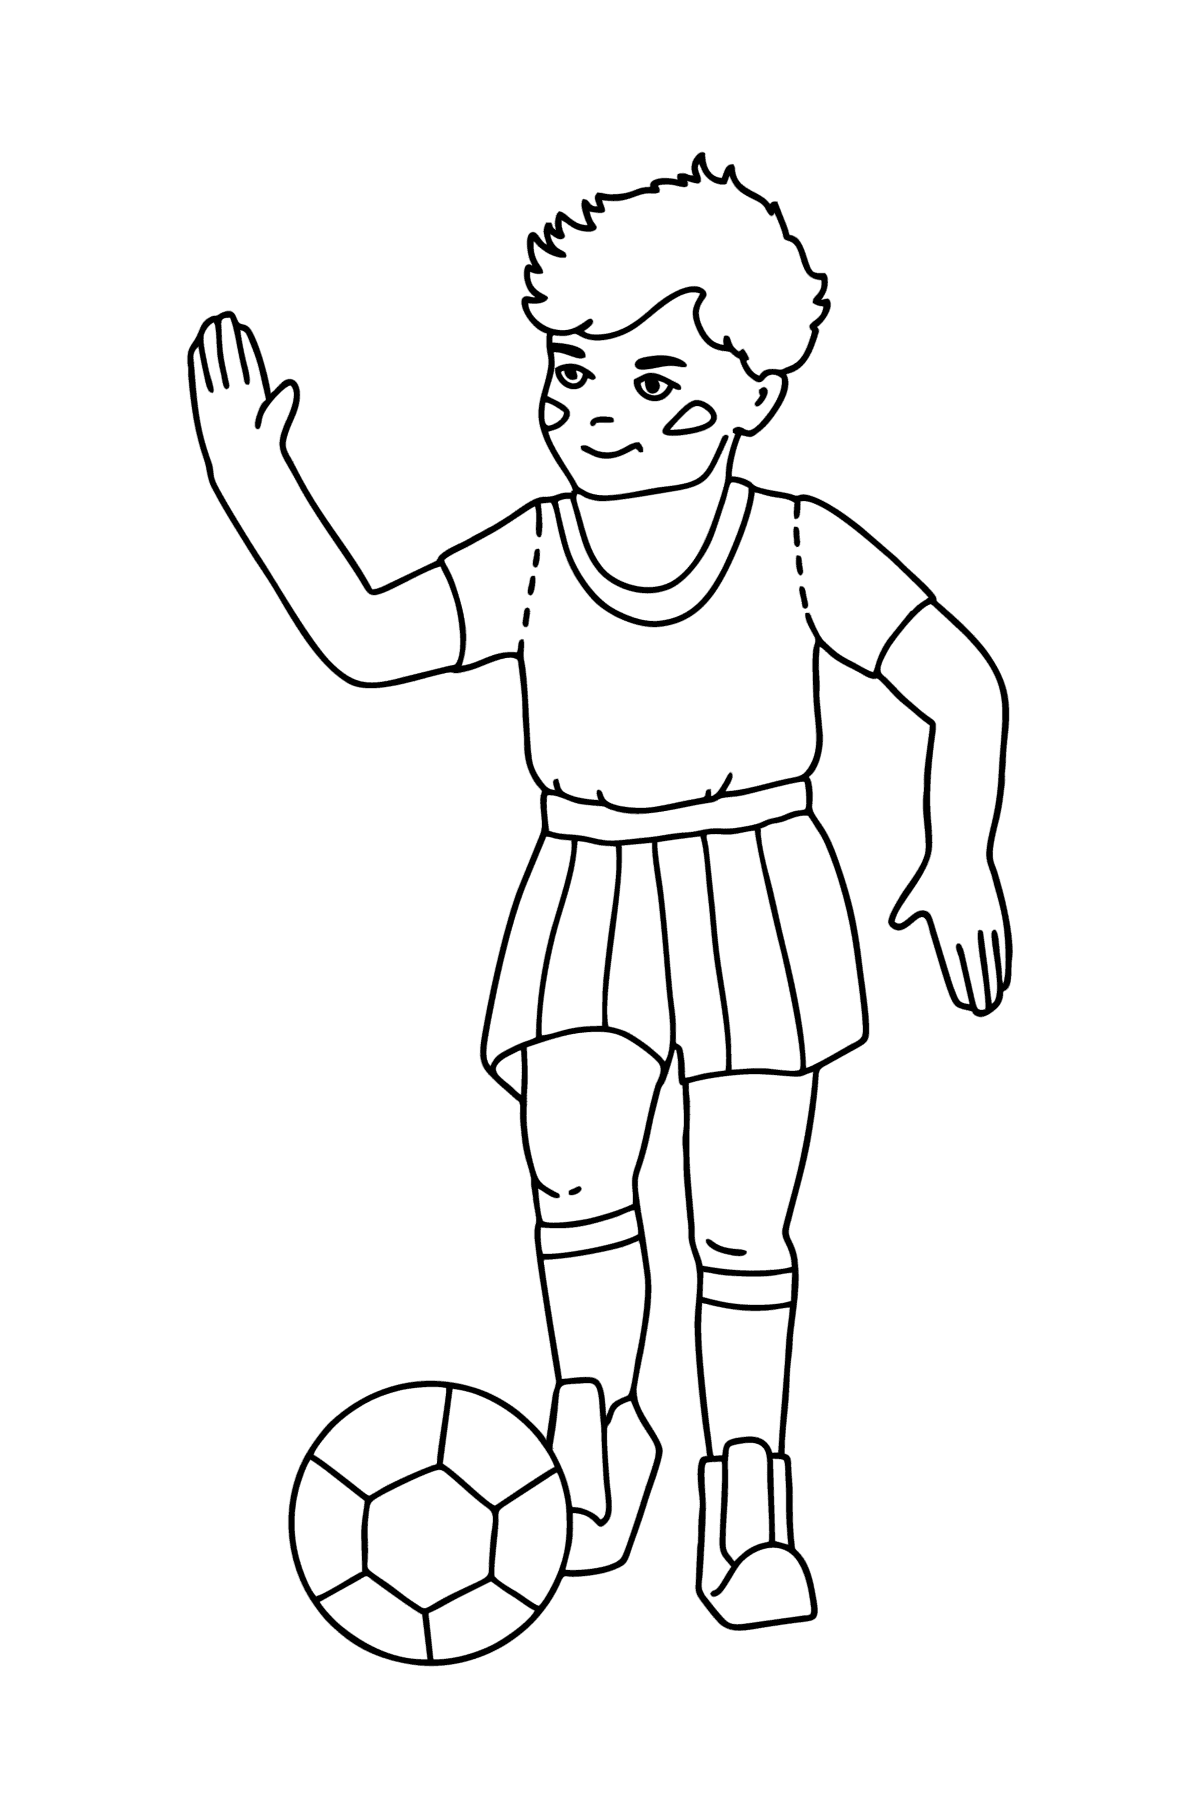 Boyama sayfası Erkek futbolcu - Boyamalar çocuklar için